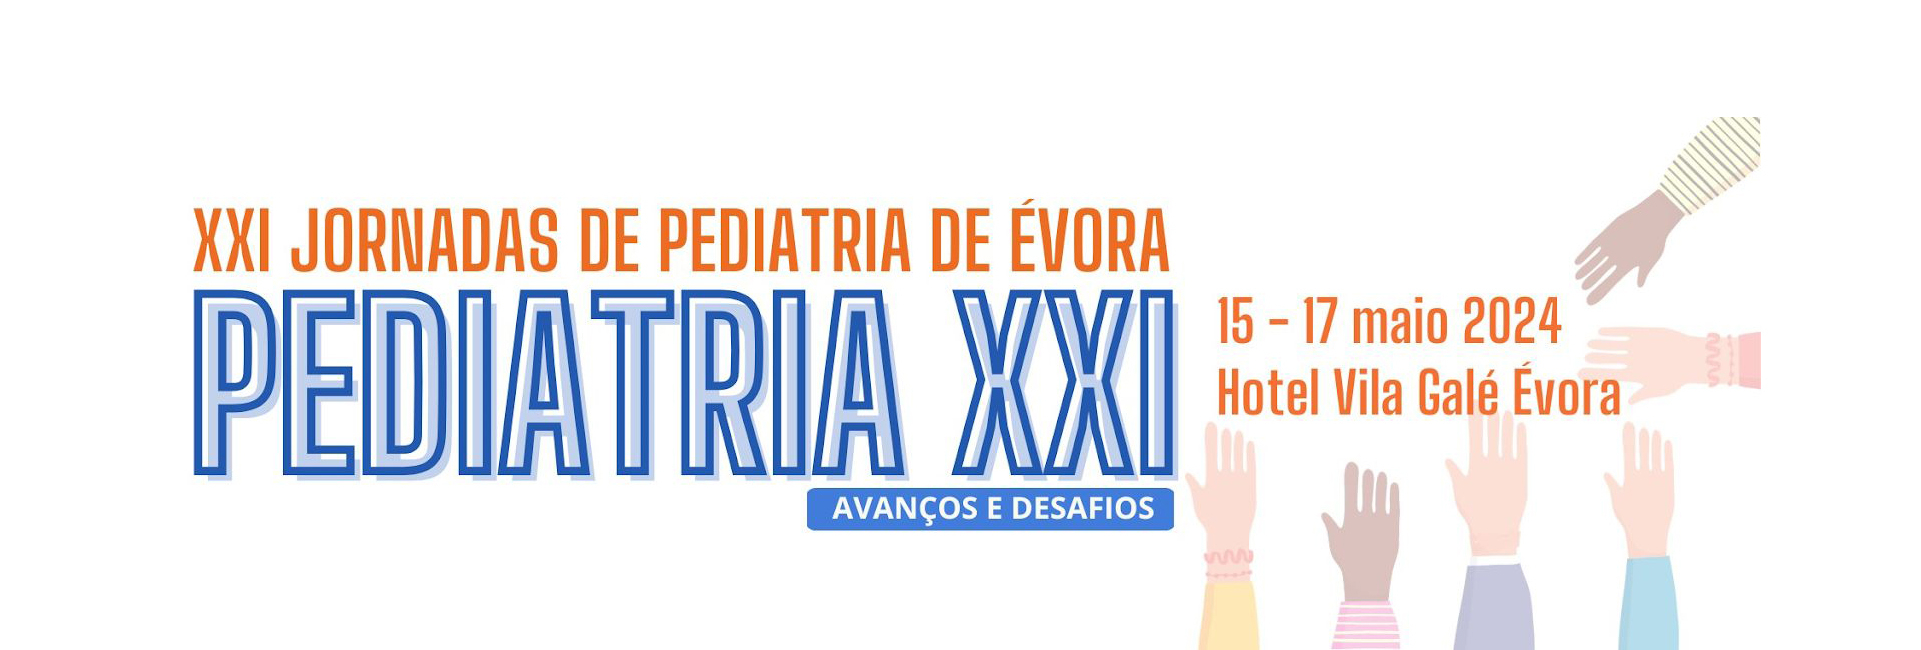 XXI Jornadas de Pediatria de Évora